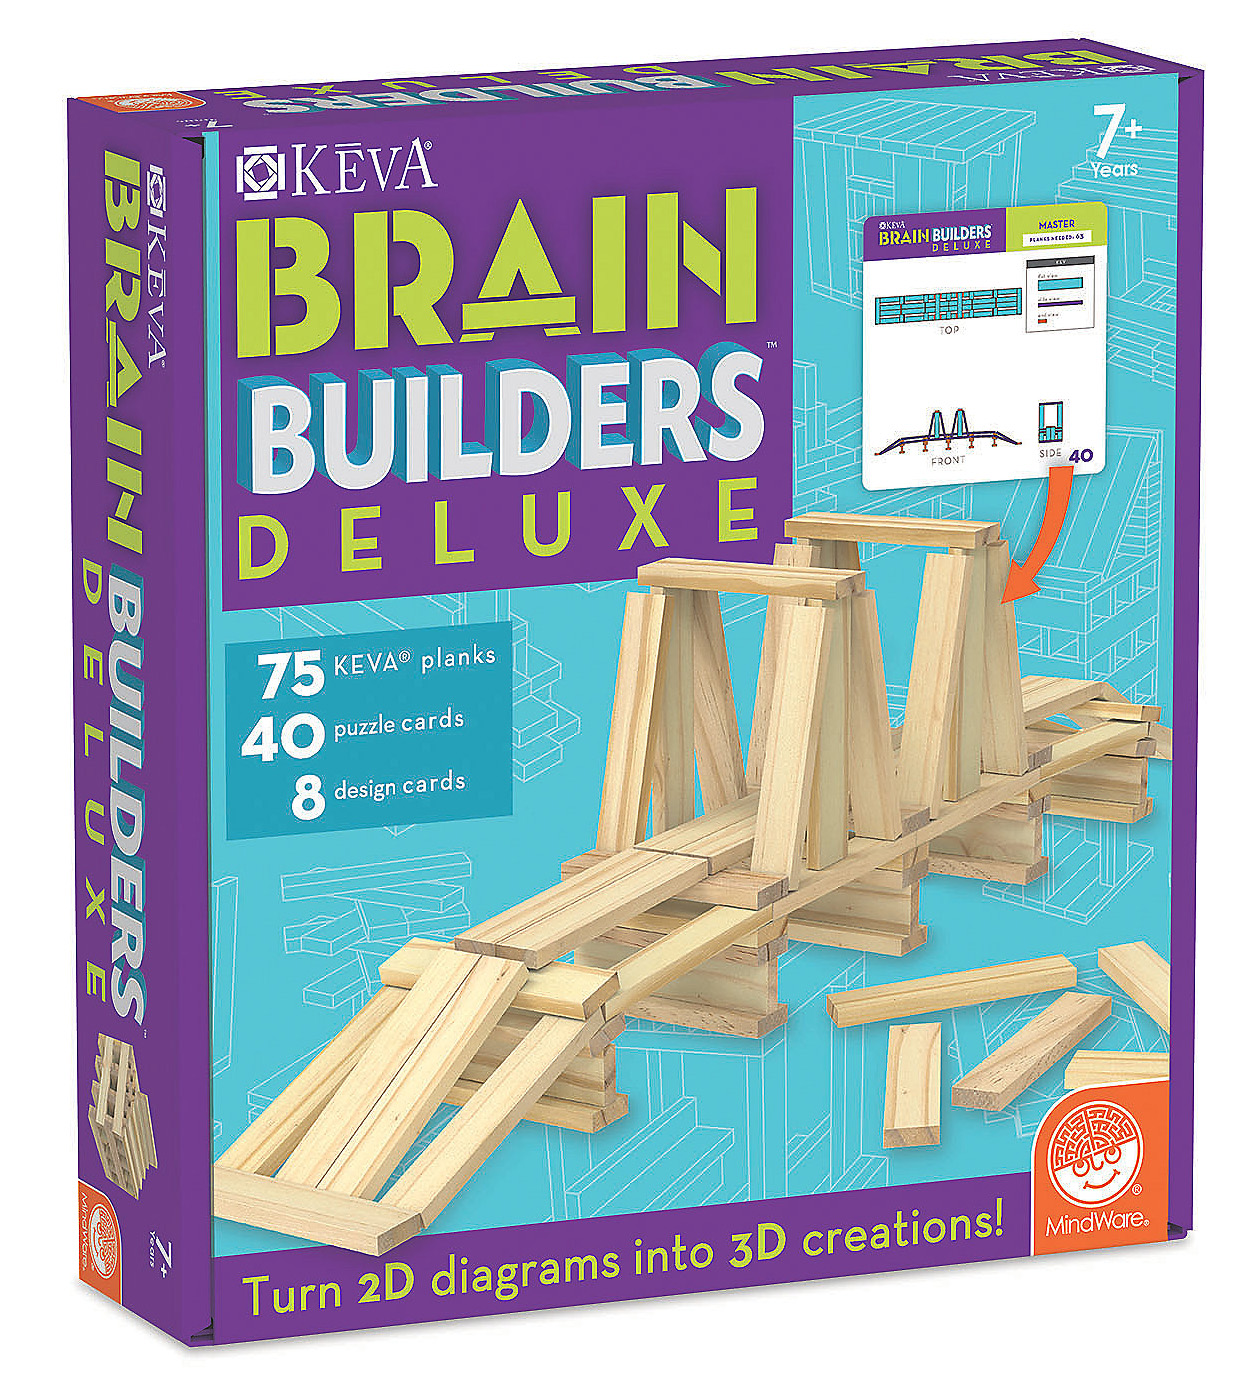 keva-brain-builders-deluxe.jpg